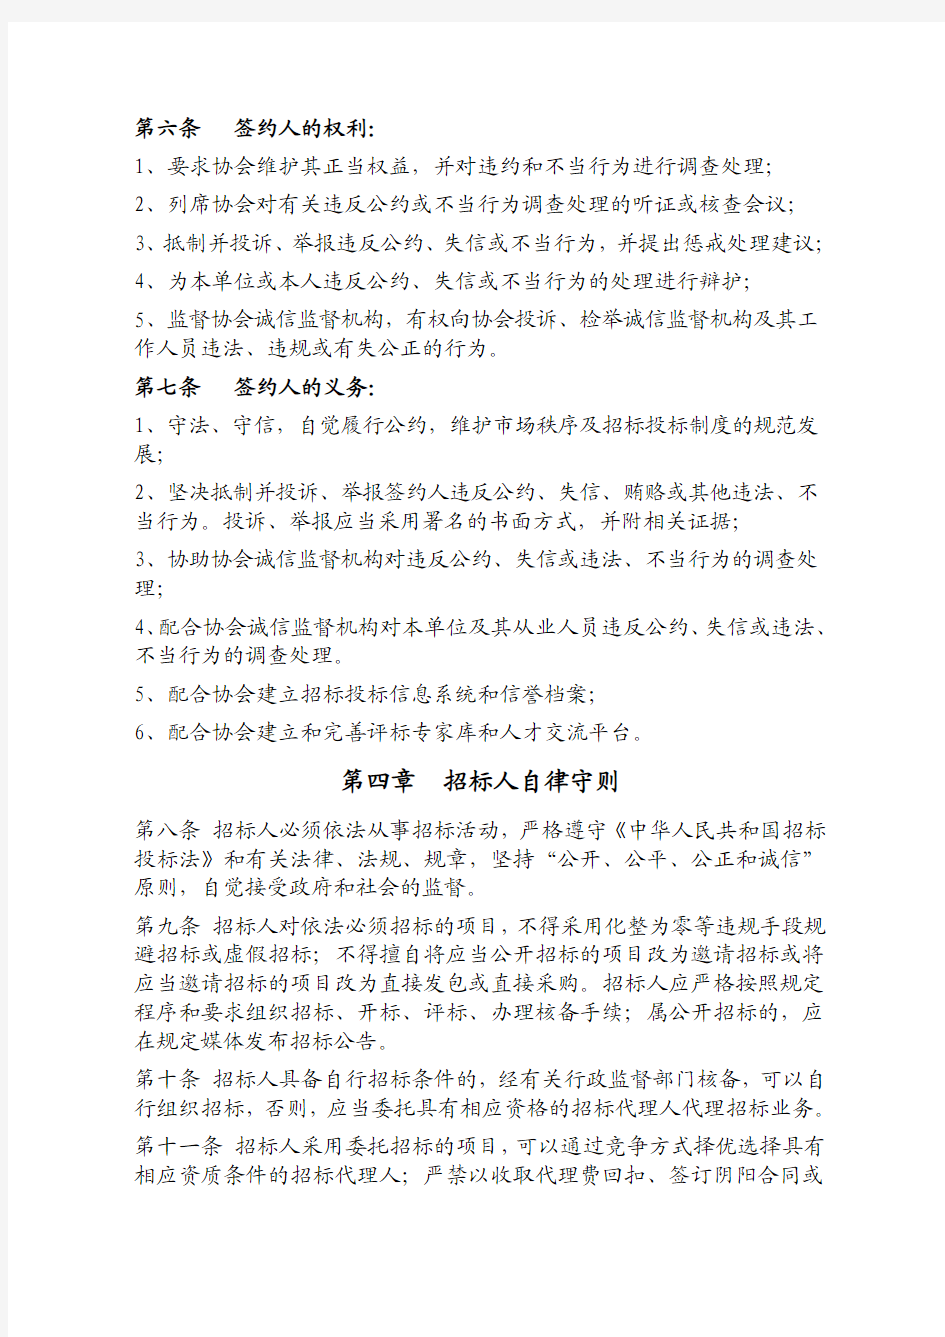 中国招标投标行业自律公约